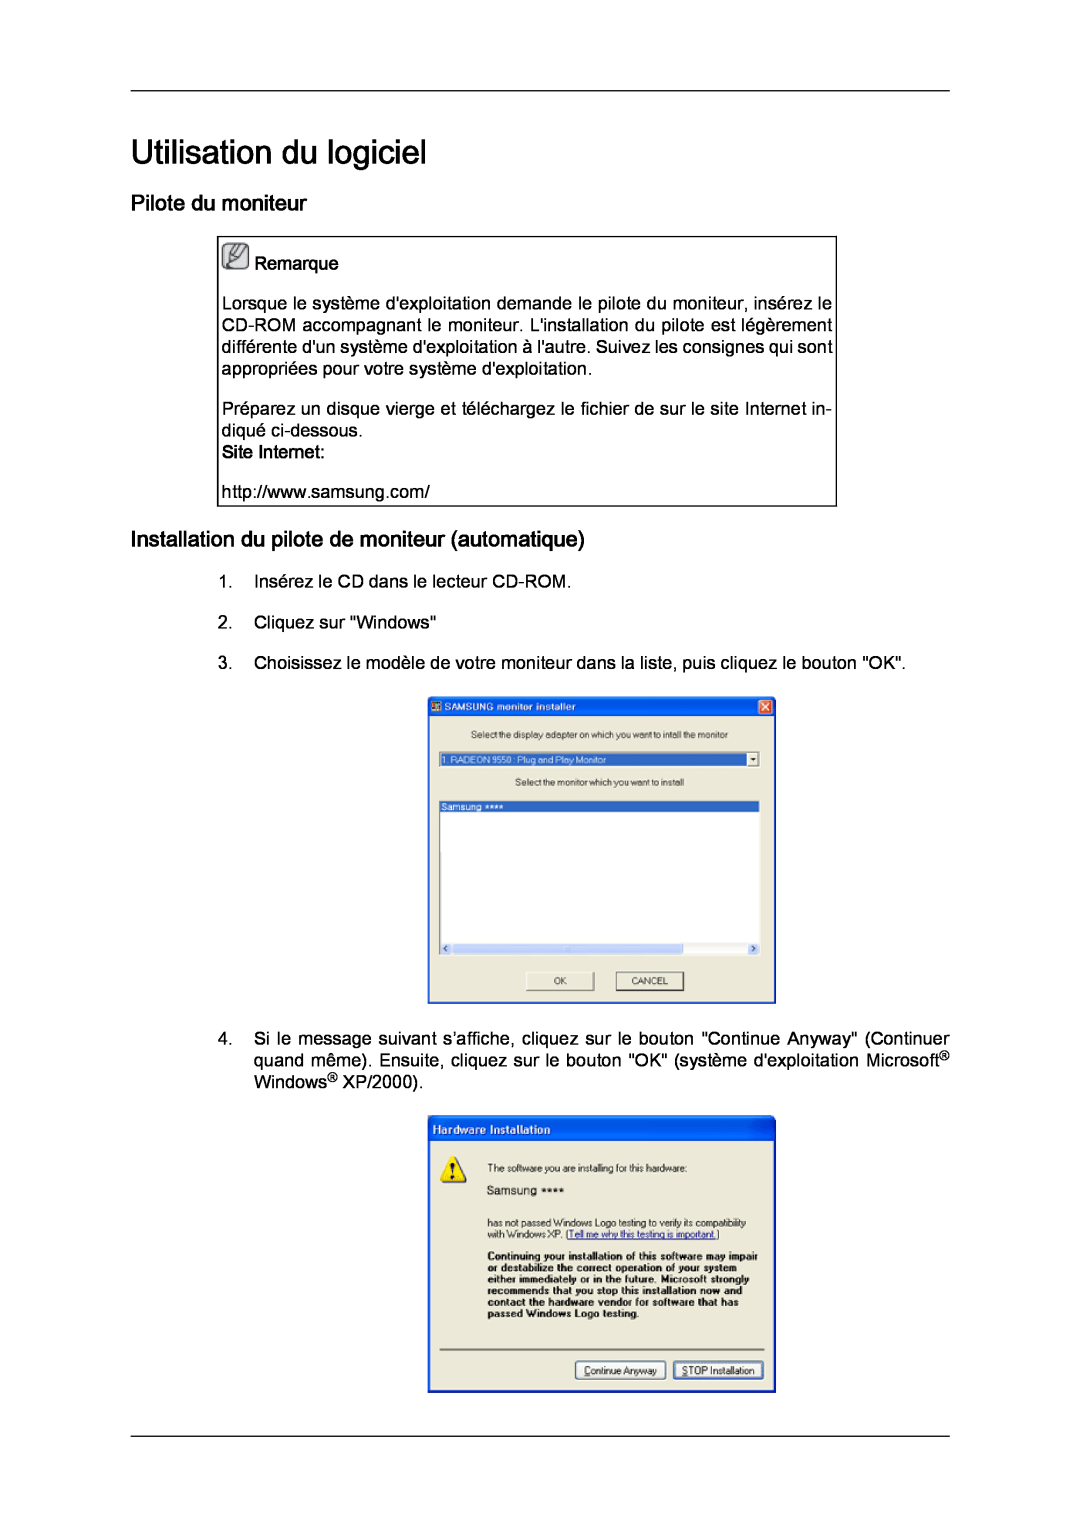 Samsung LH70TCUMBG/EN manual Utilisation du logiciel, Pilote du moniteur, Installation du pilote de moniteur automatique 